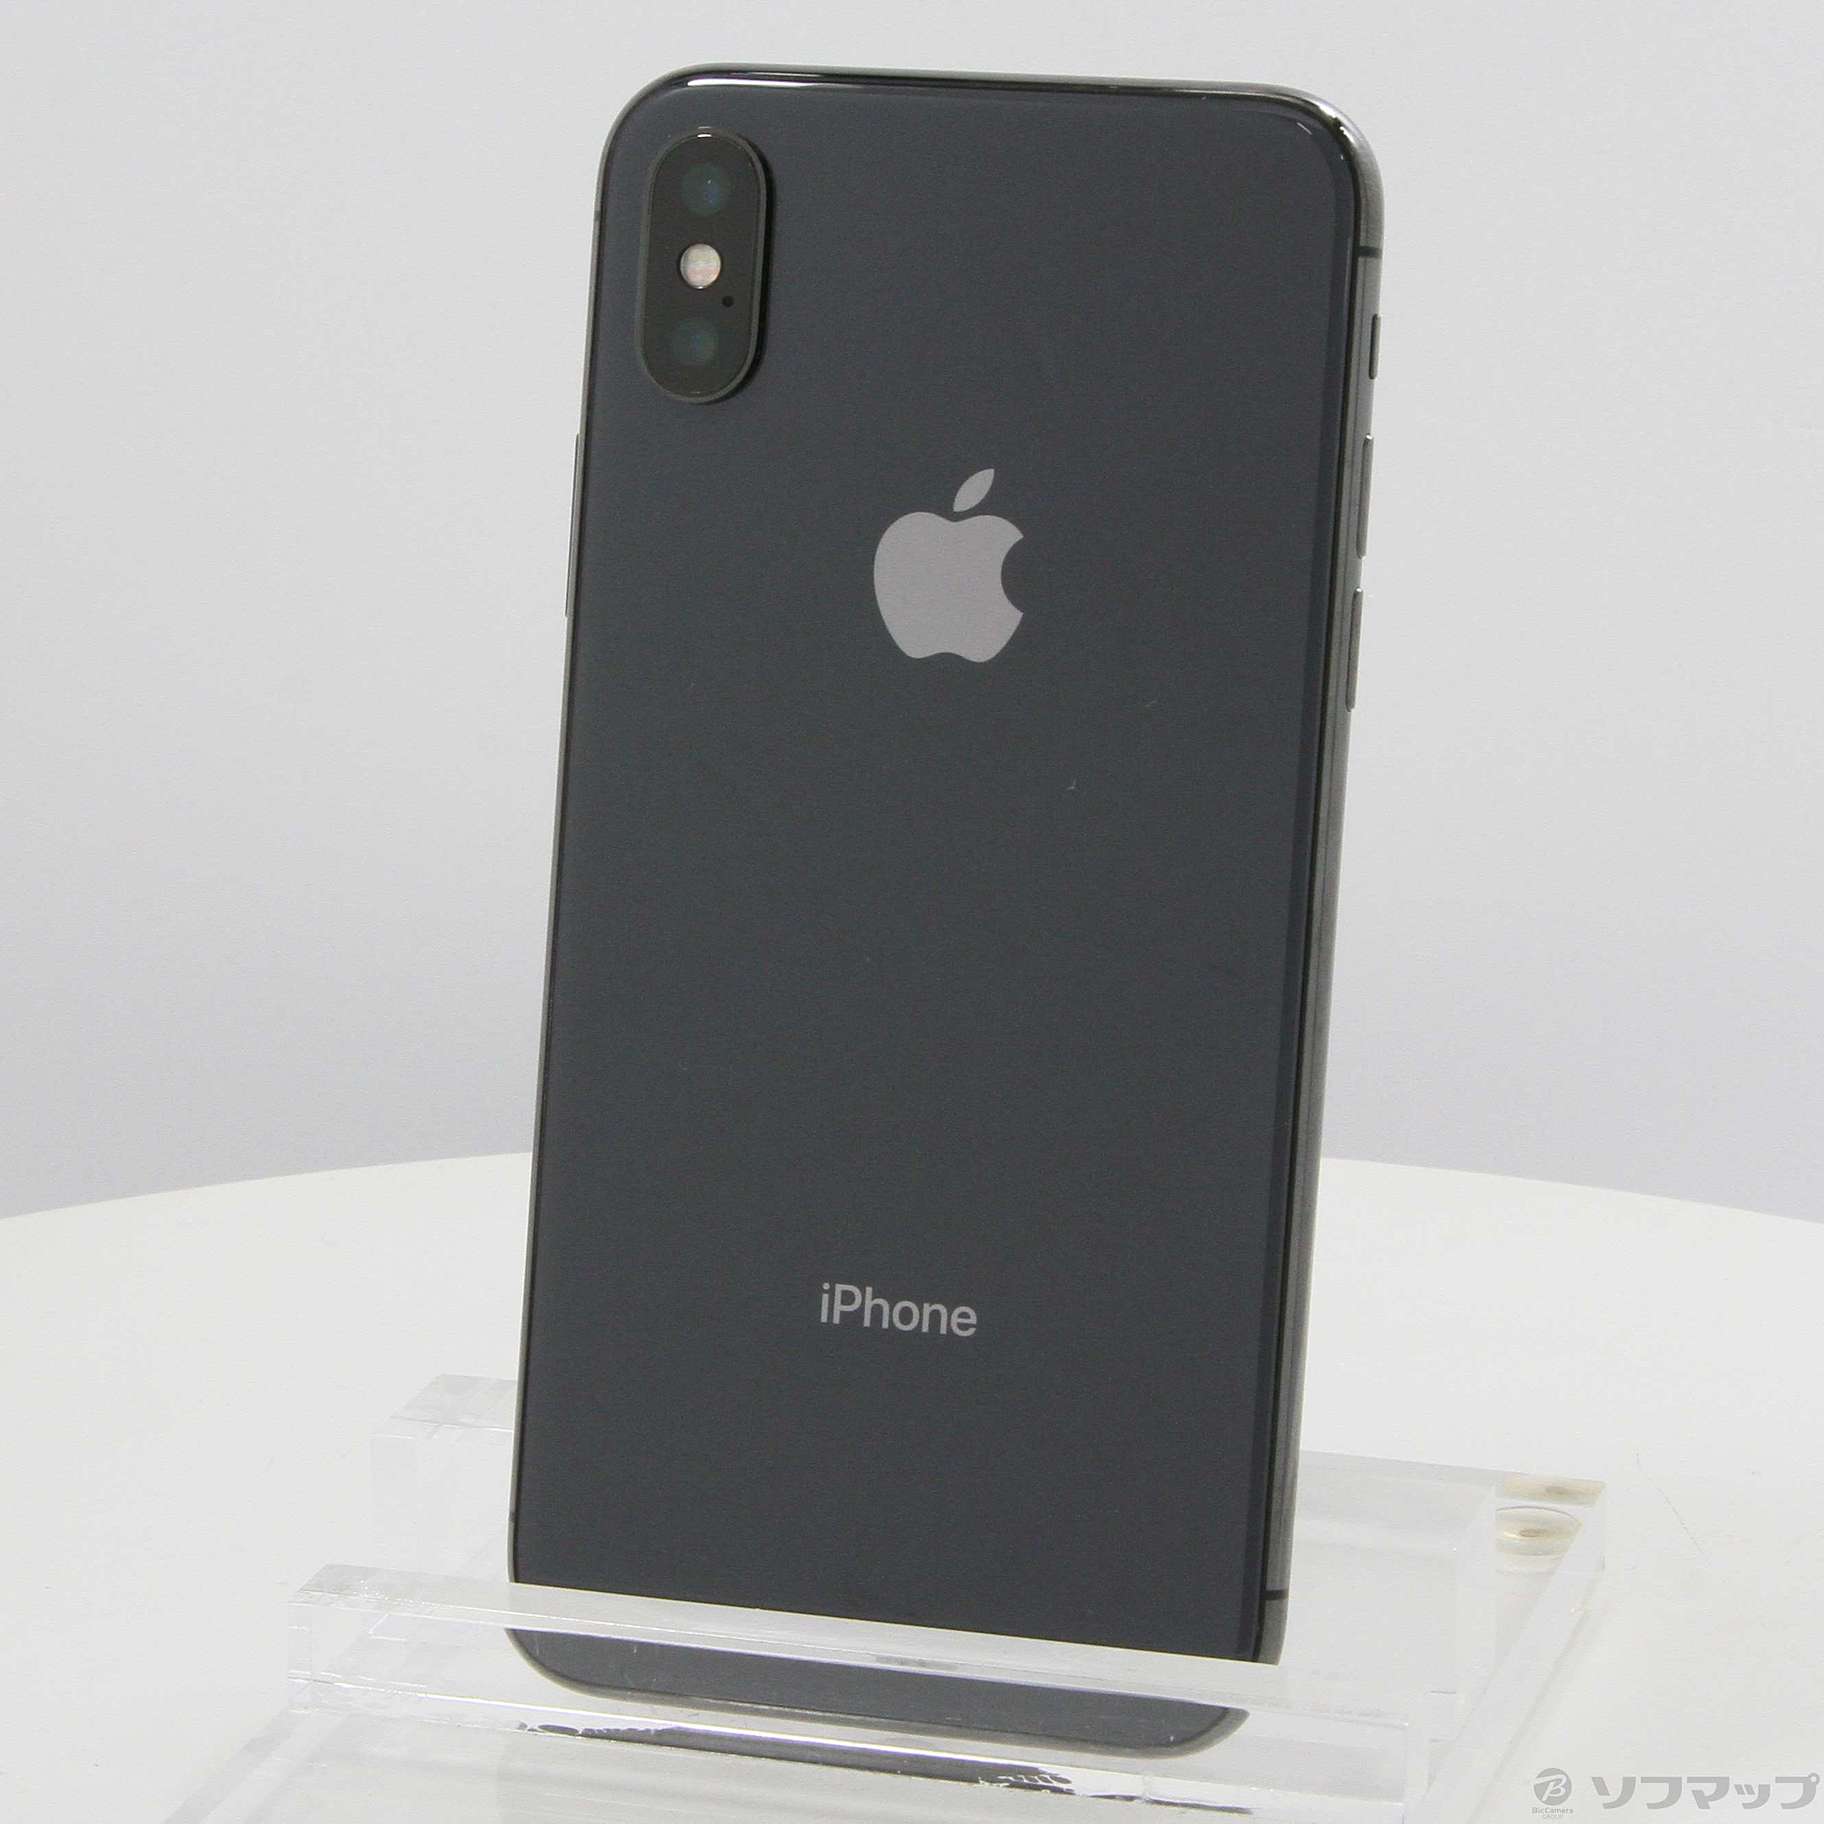 iPhone X 256GB スペースグレイ 黒 SIMフリー | www.ankuramindia.com